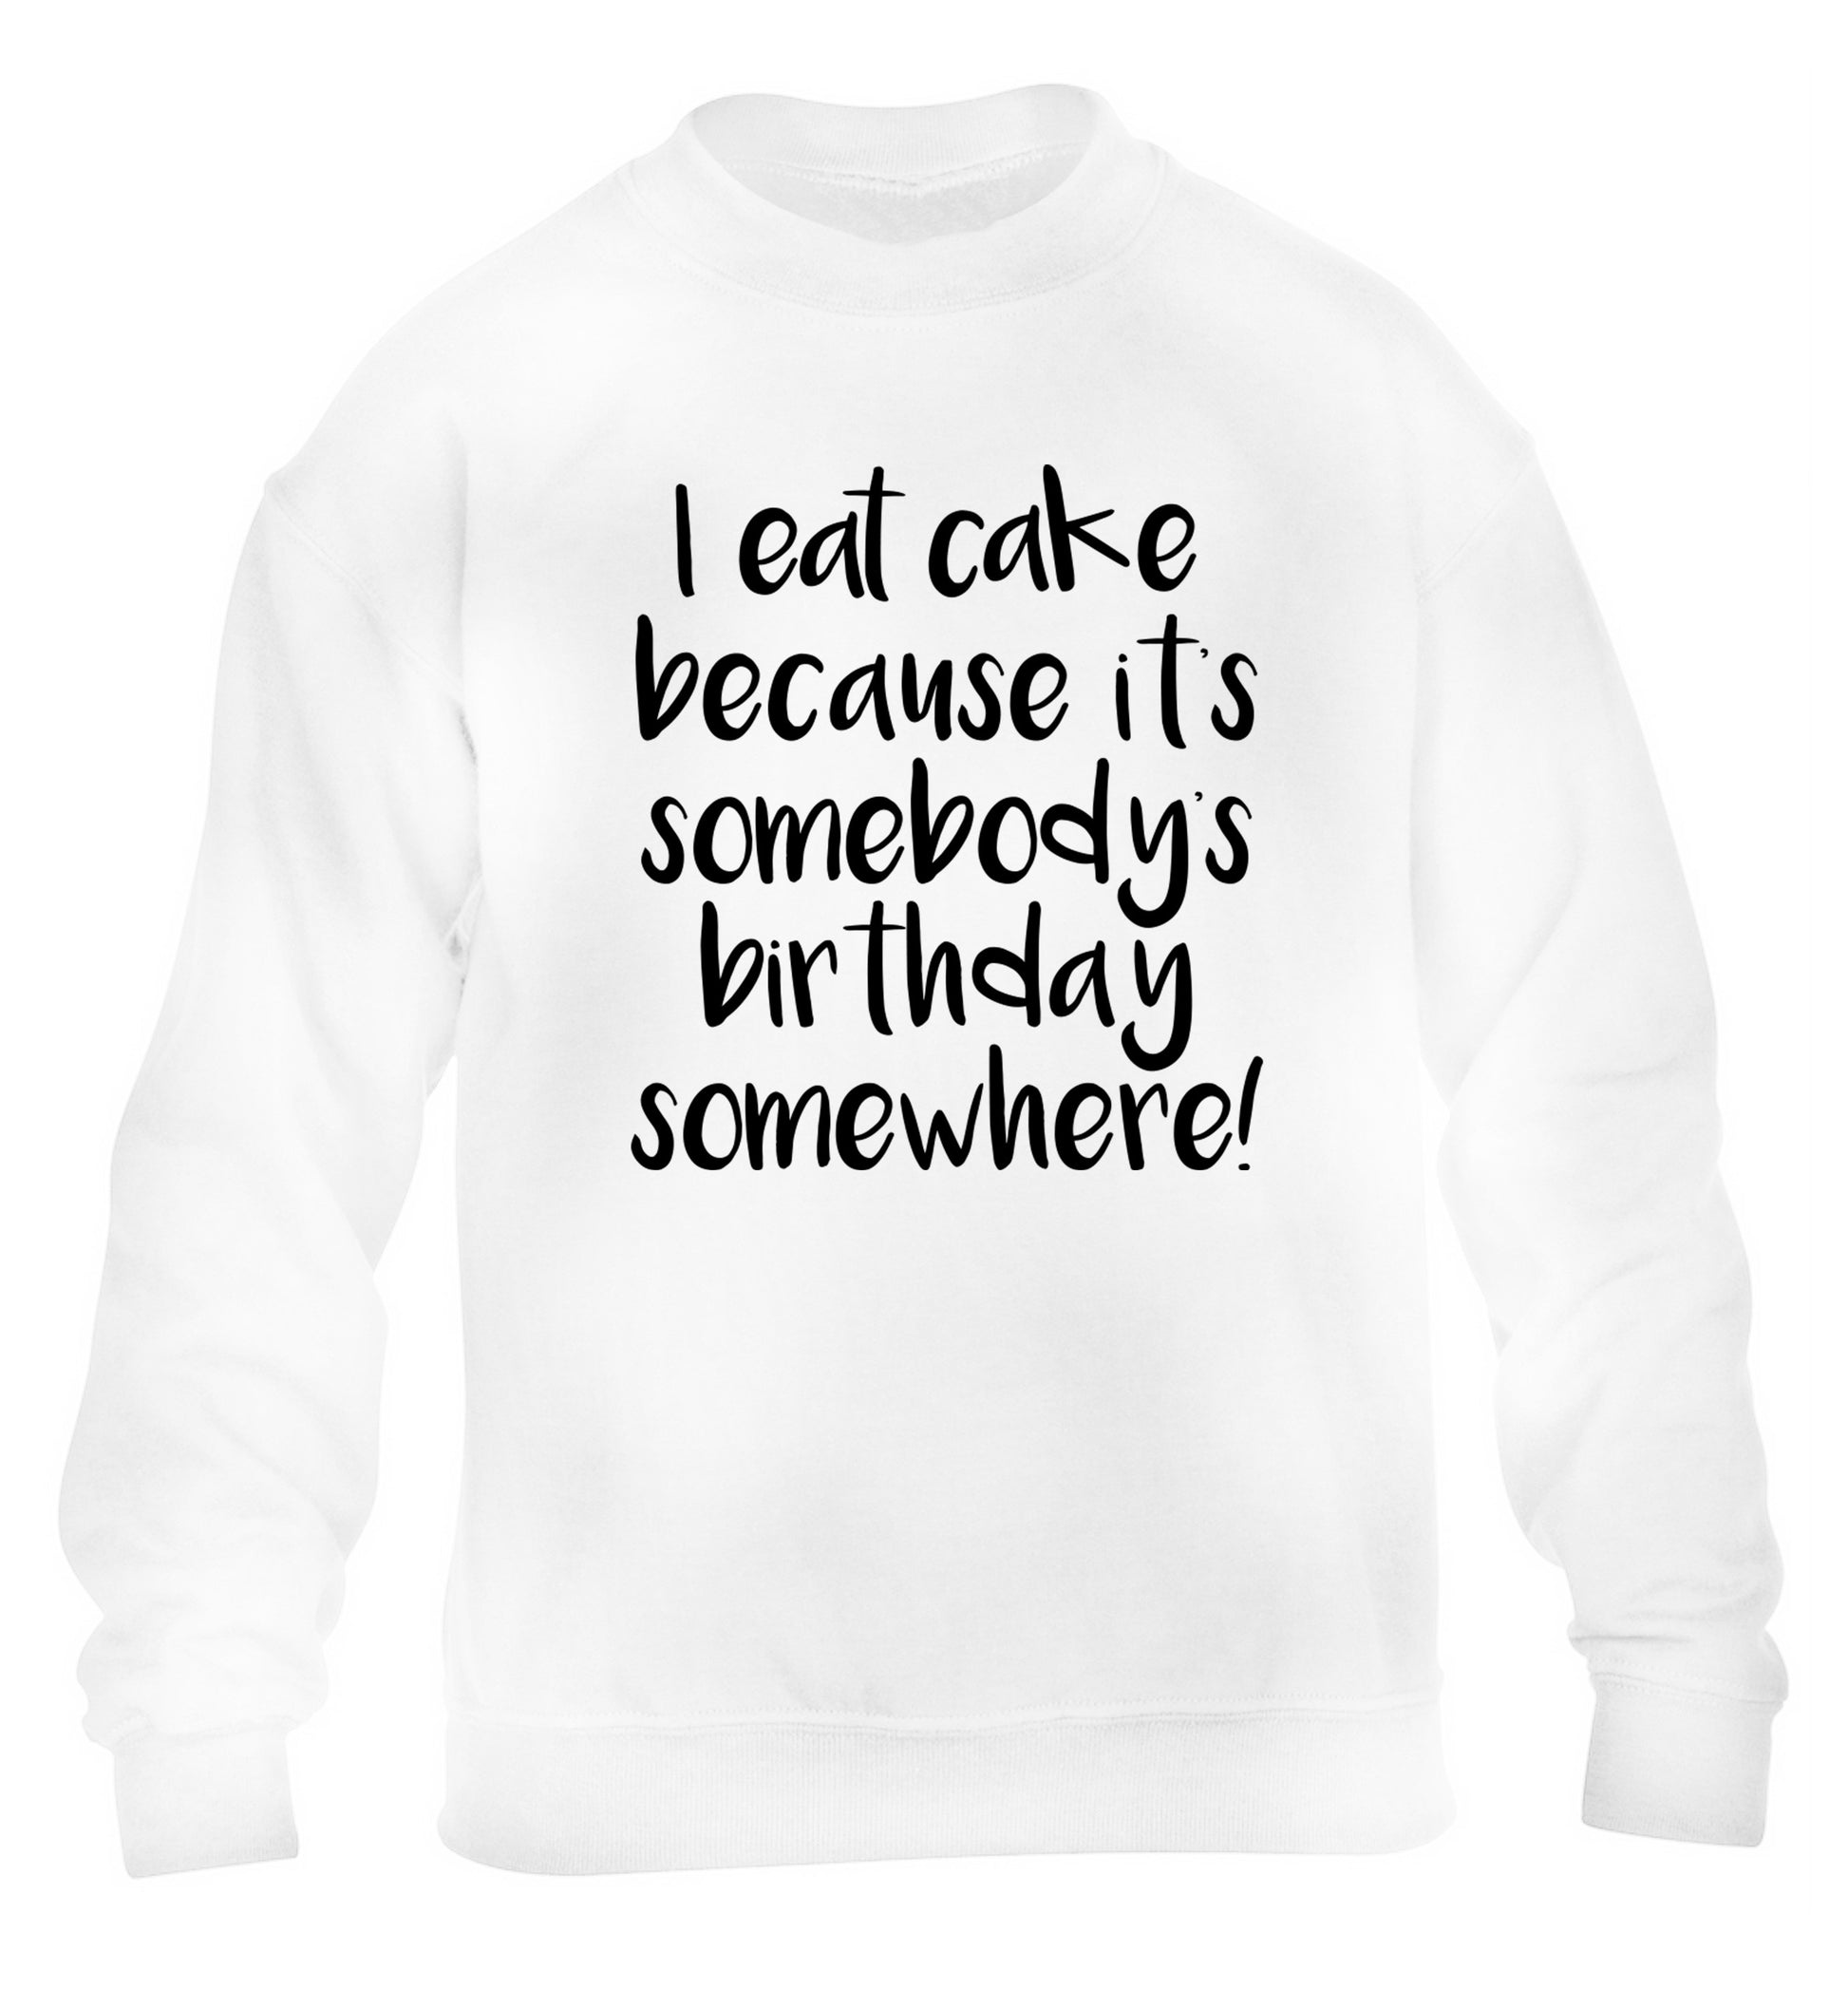 I eat cake because it's somebody's birthday somewhere! children's white sweater 12-14 Years